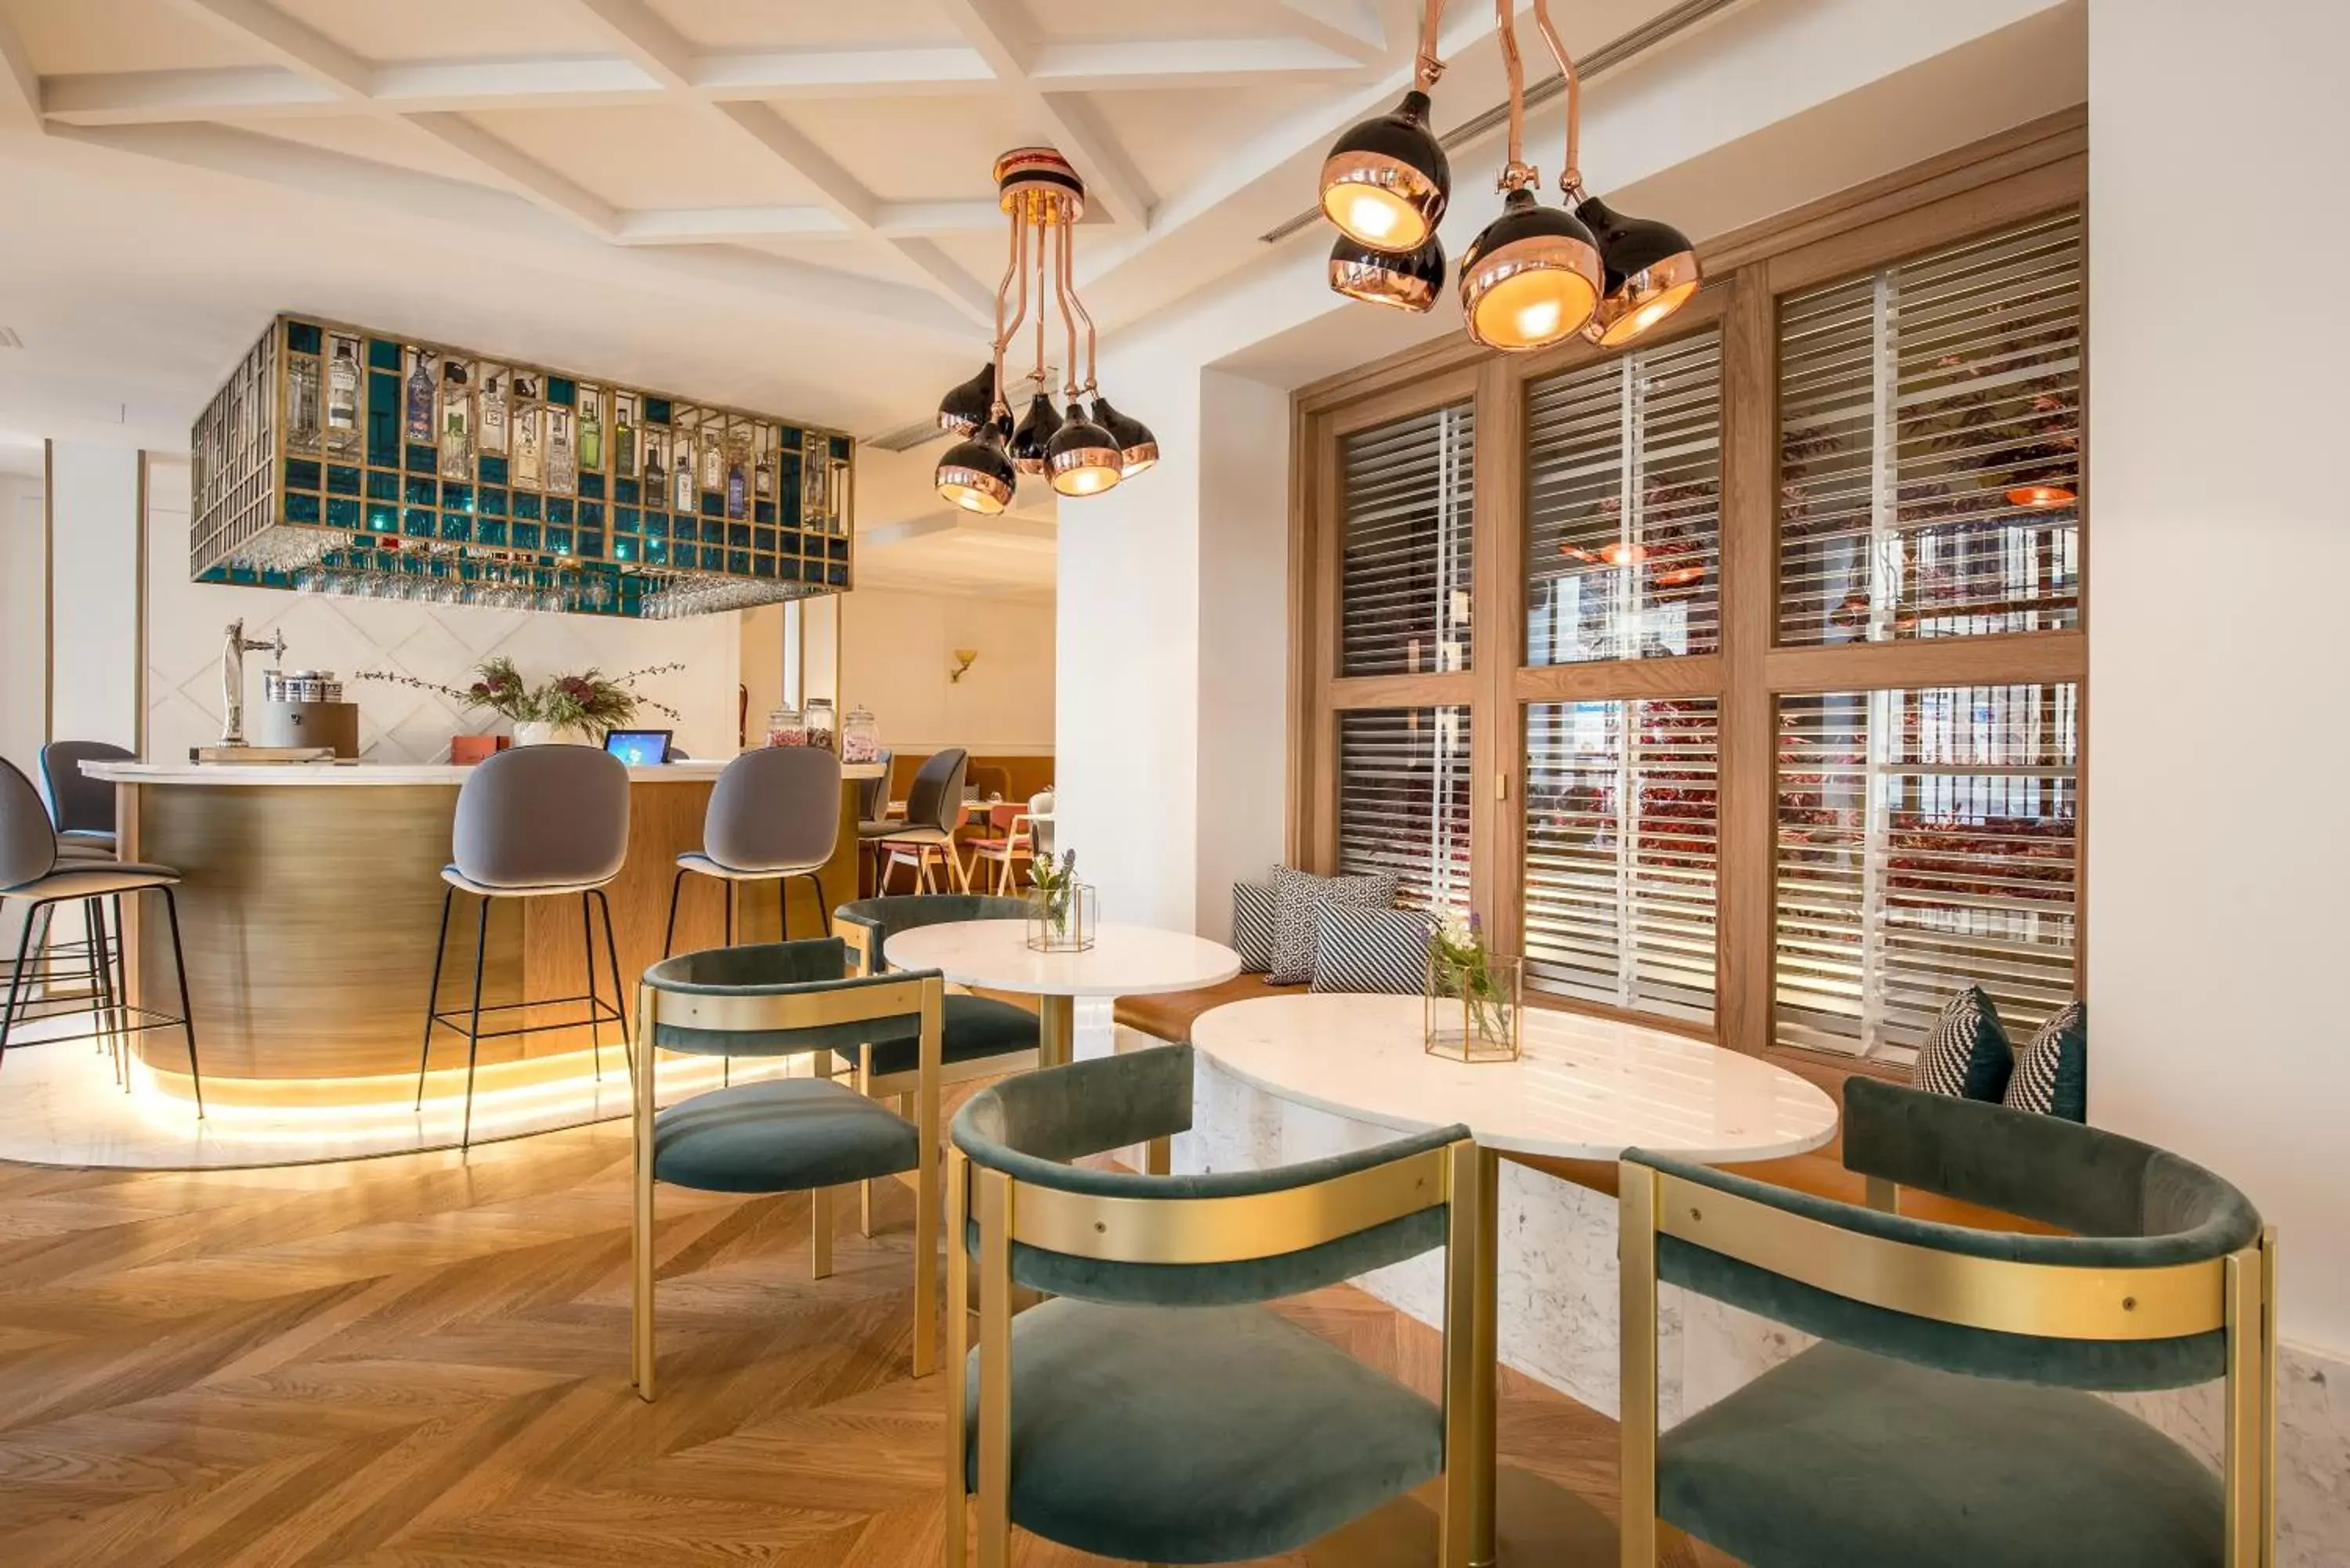 Restaurant/places to eat, Lounge/Bar in Vincci Centrum